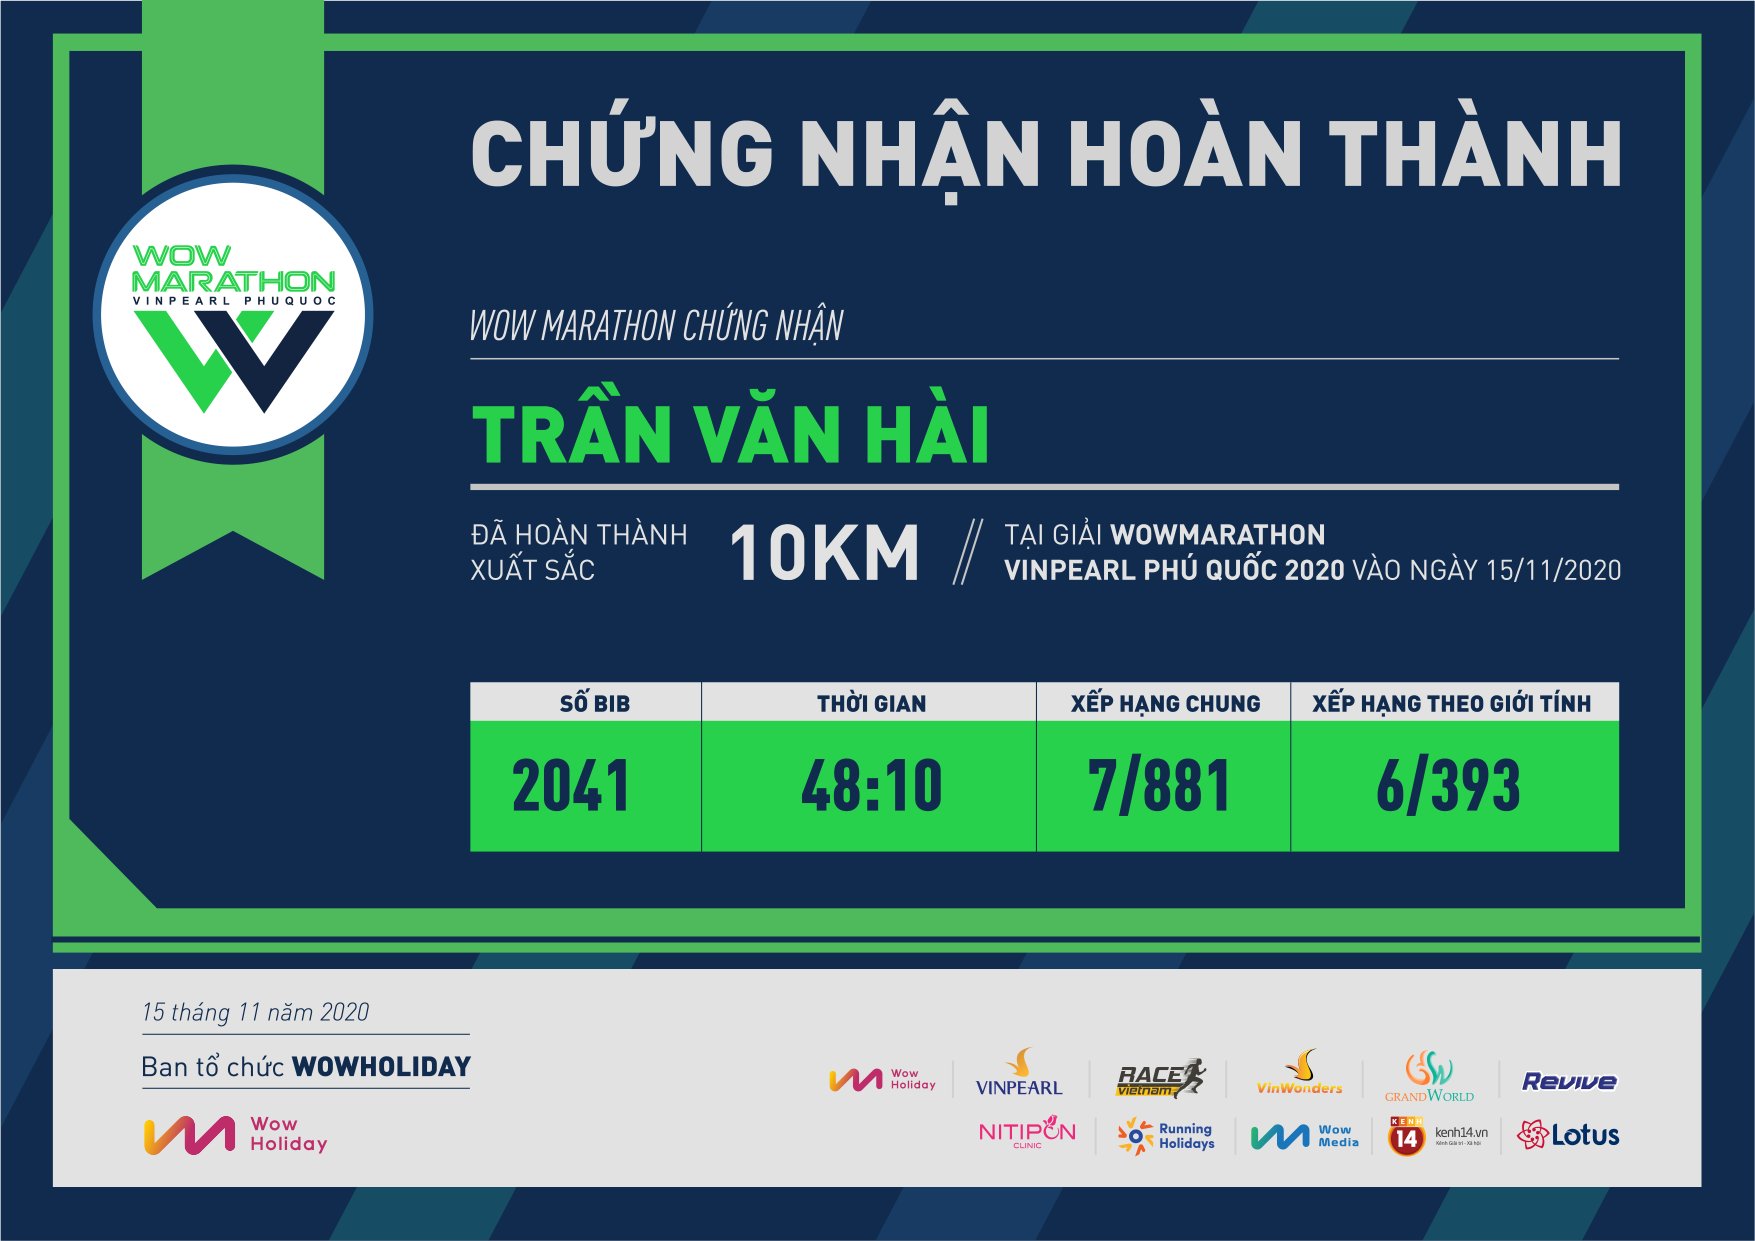 2041 - Trần Văn Hài